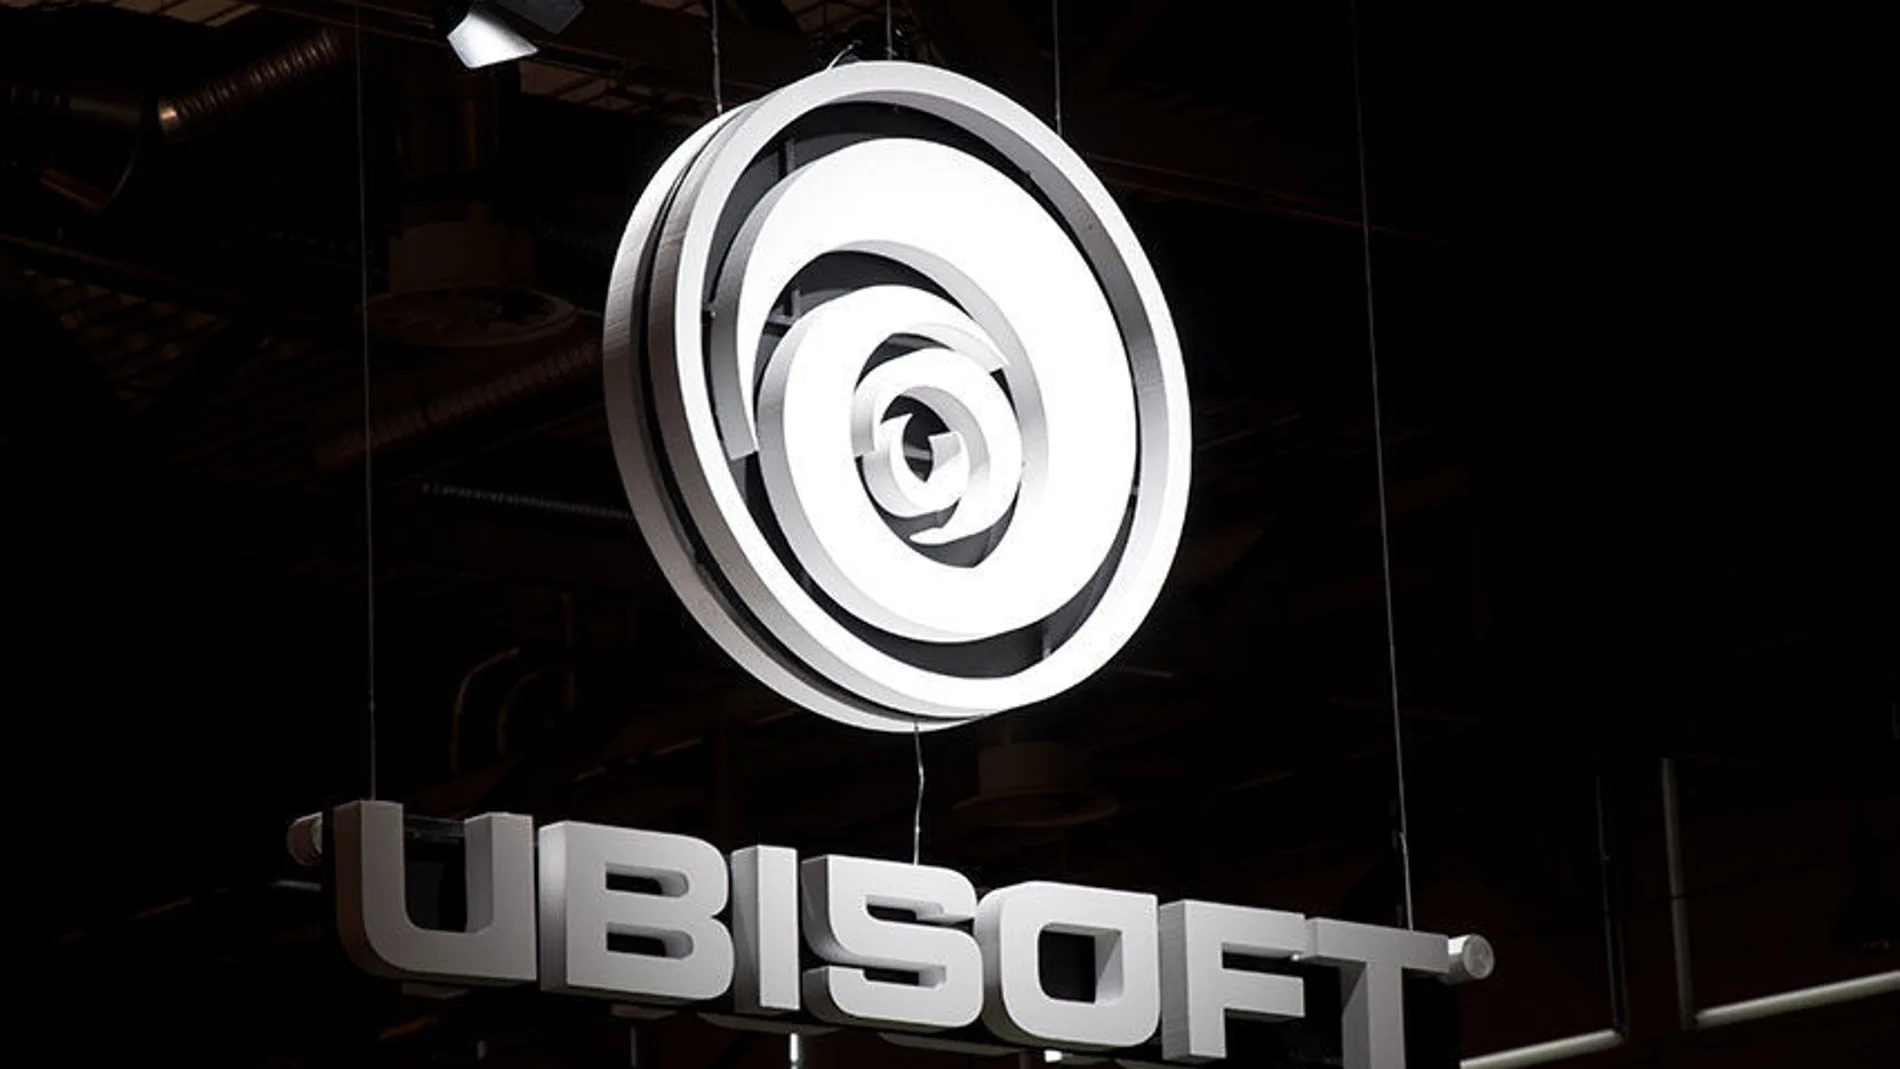 Ubisoft realiza una nueva escabechina con el soporte multijugador de sus títulos antiguos.